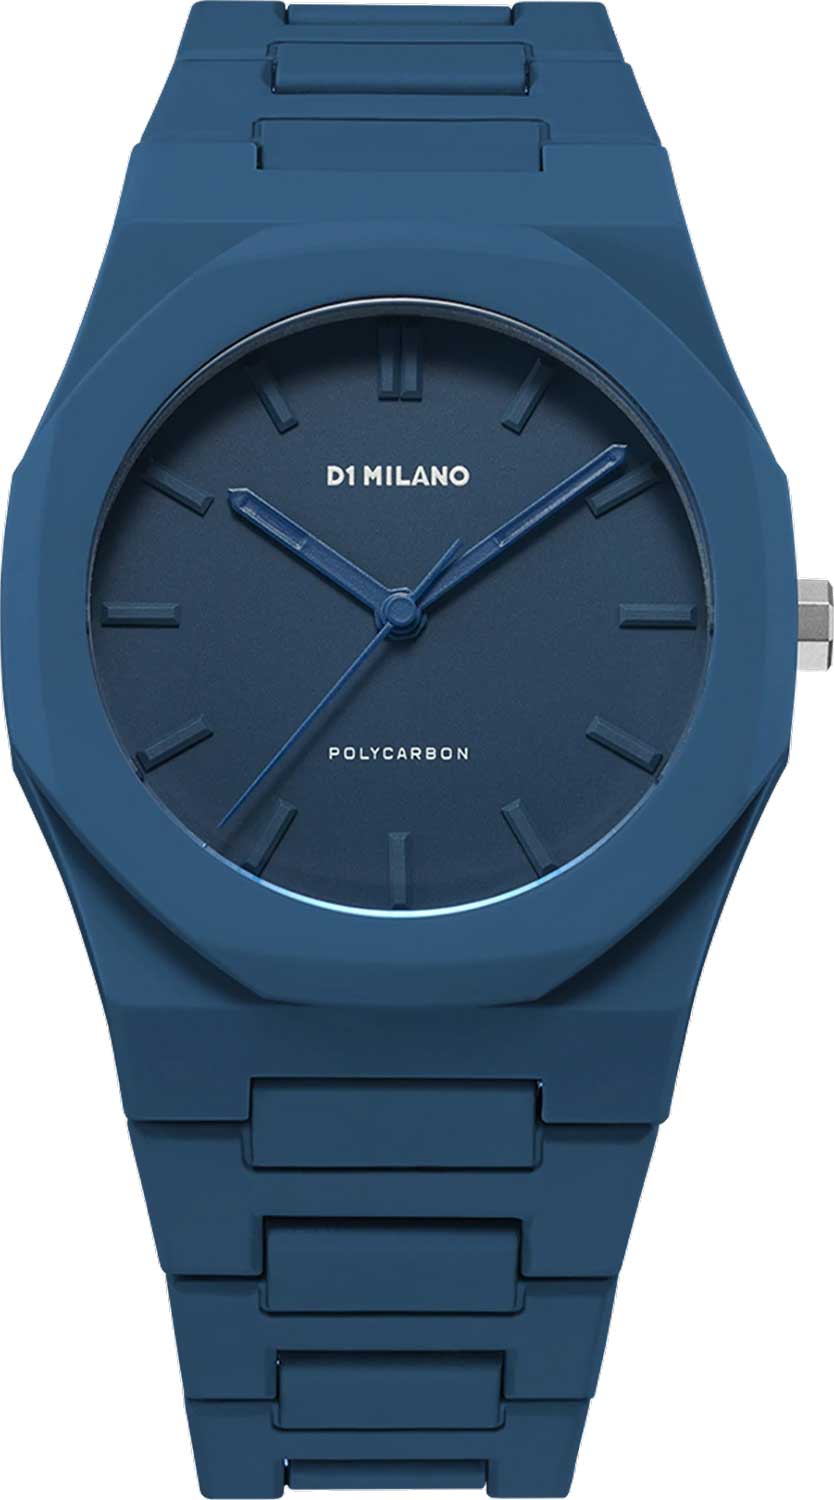 Наручные часы унисекс D1 Milano PCBJ21 синие